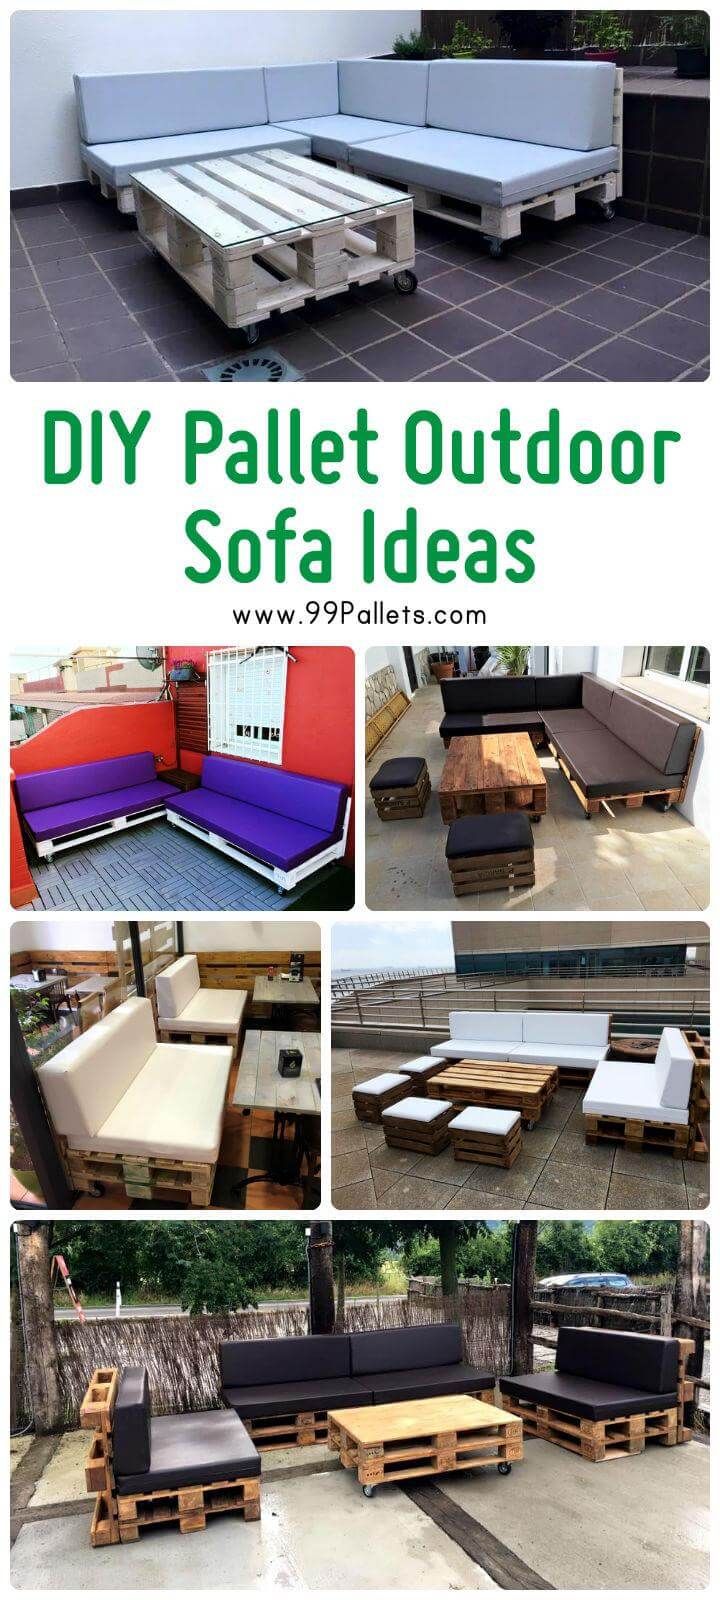 Diy Pallet Outdoor Sofa Ideas